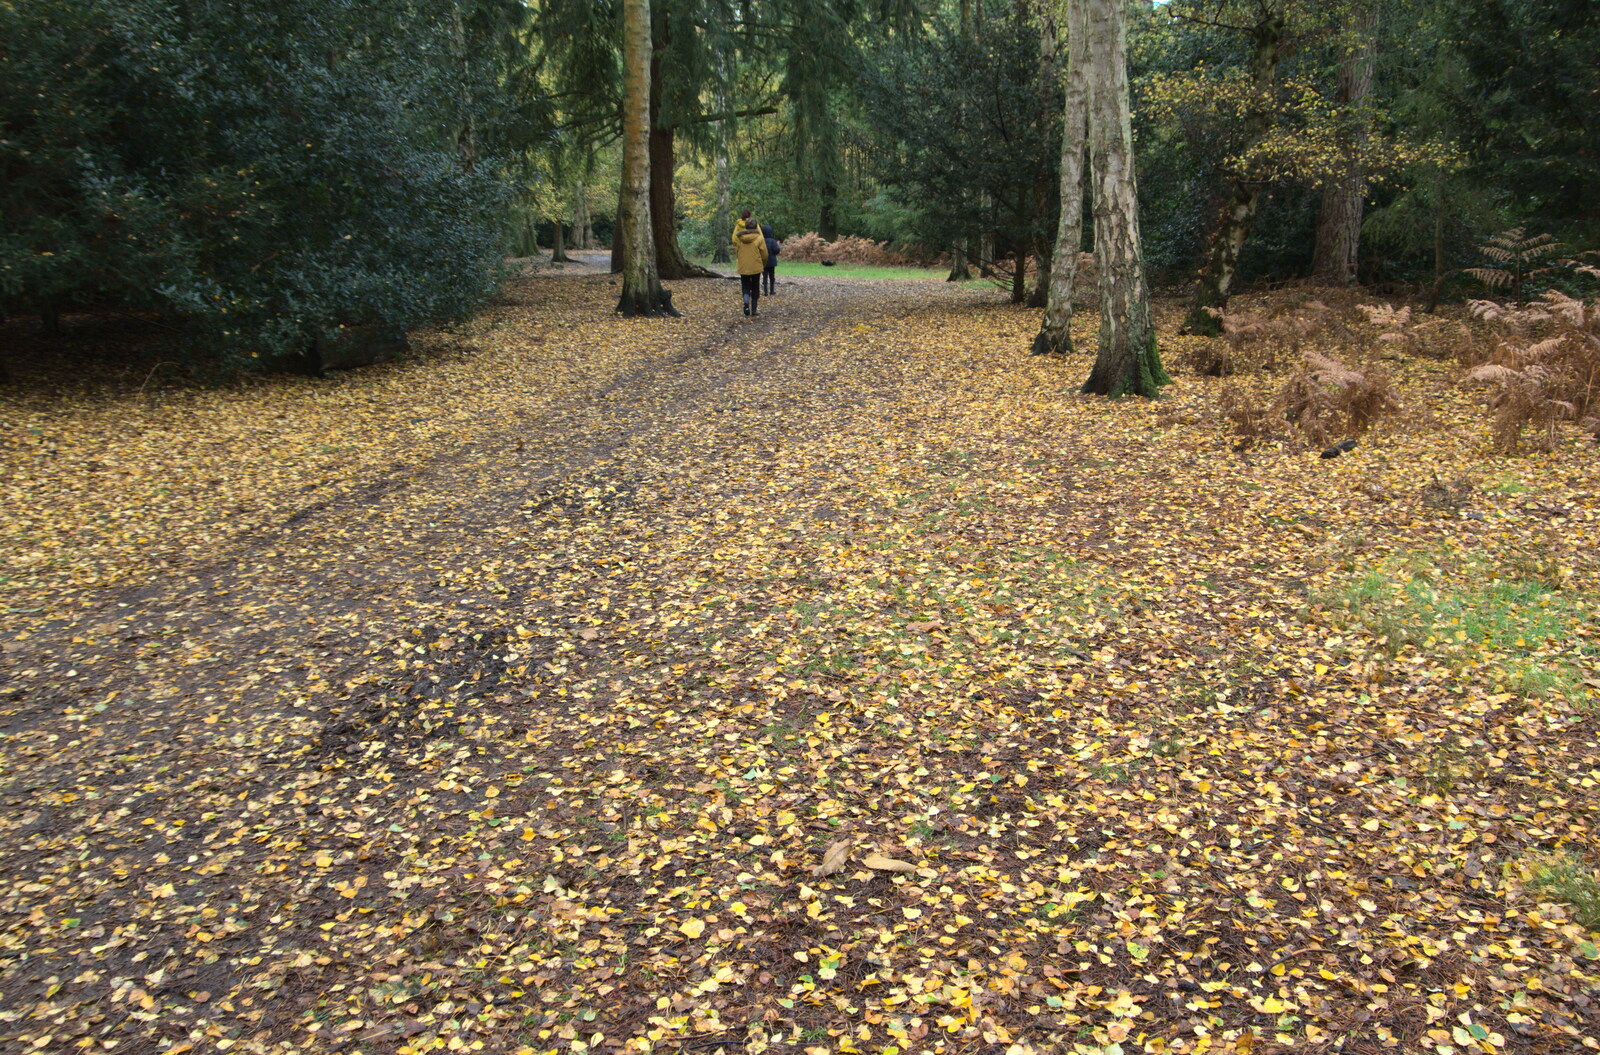 A carpet of golden leaves from A Trip to Sandringham Estate, Norfolk - 31st October 2020